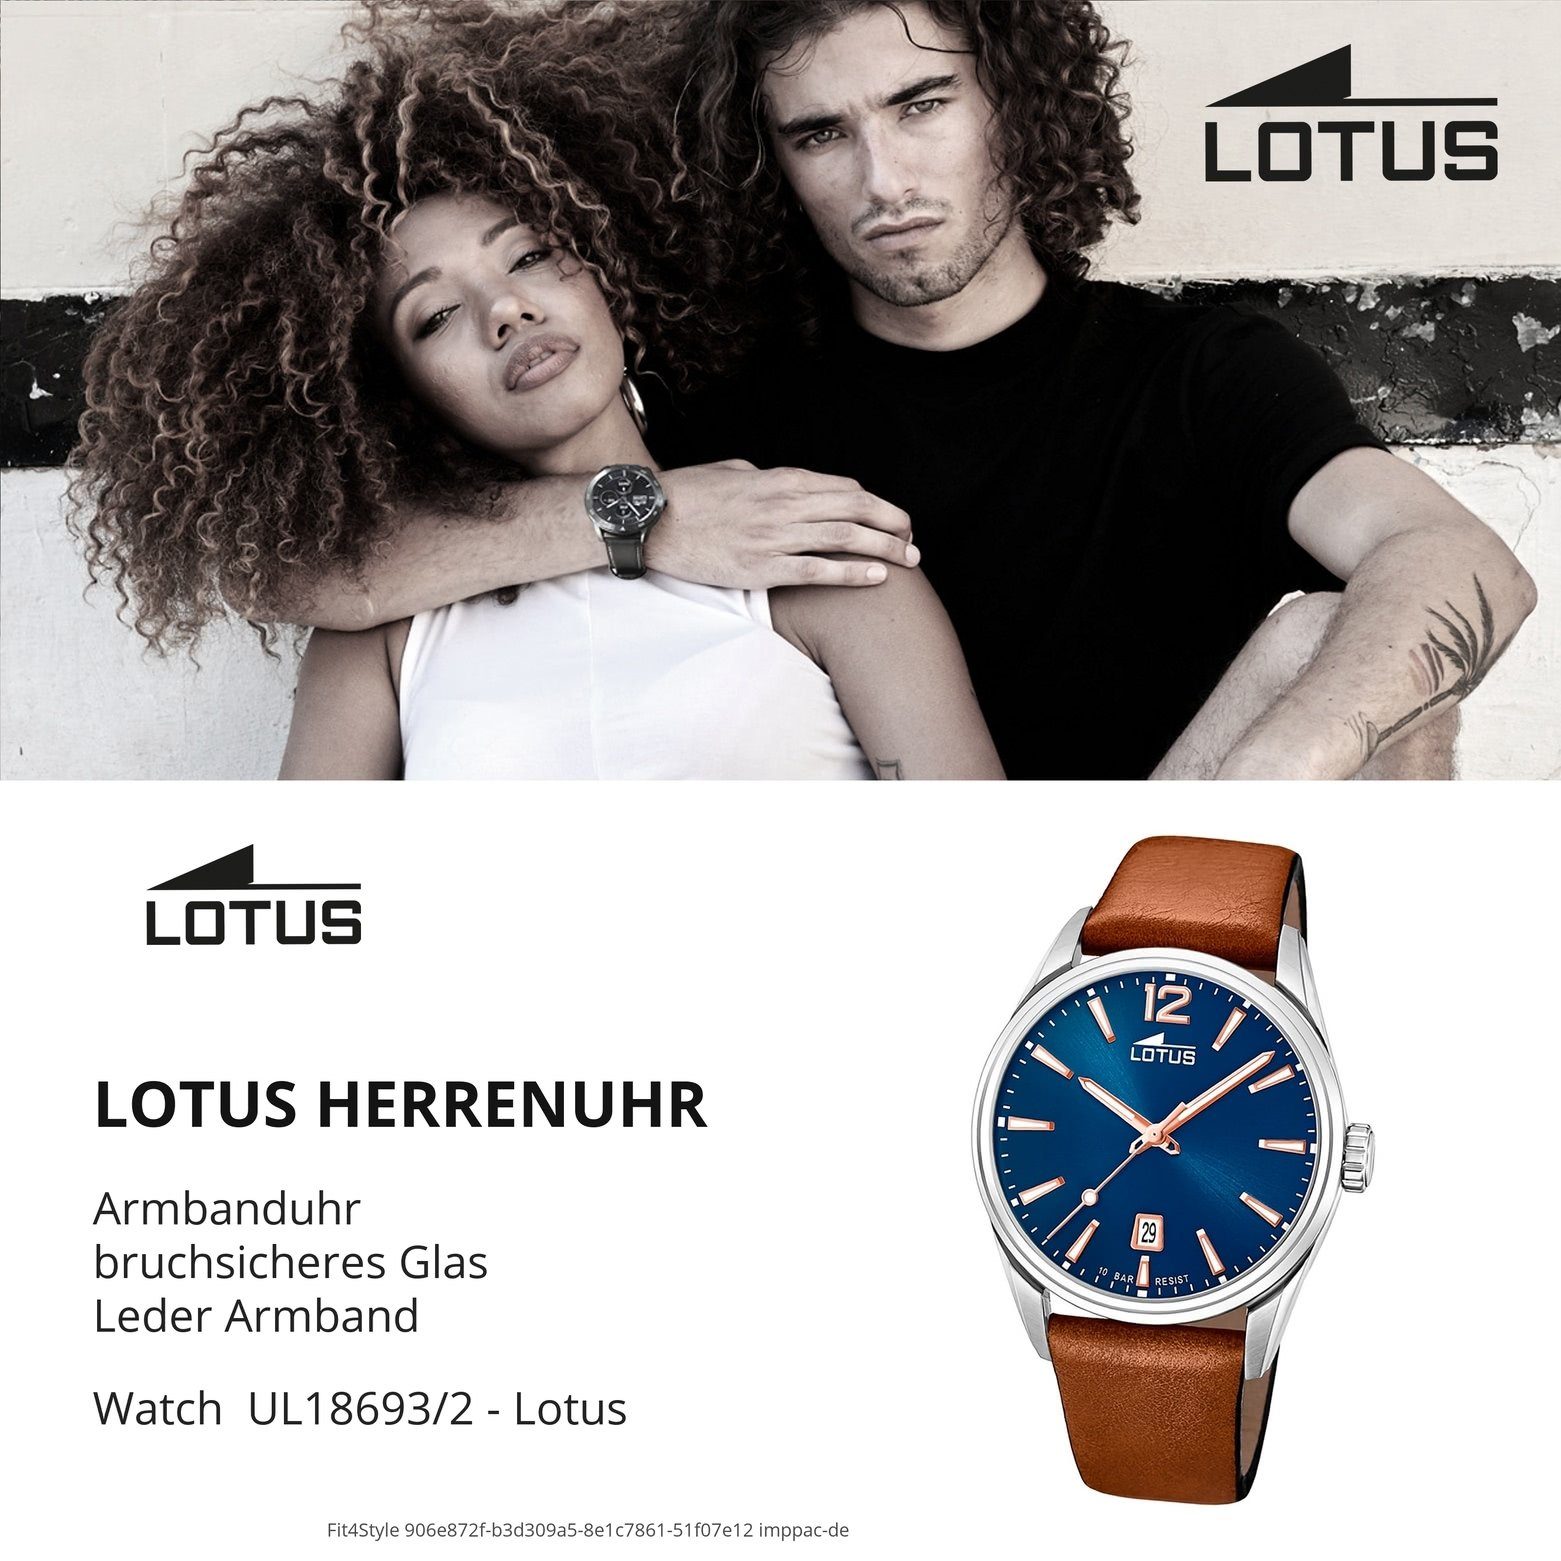 Lotus Lederarmband braun Uhr Quarzuhr 18693/2 Herren groß Elegant (ca. LOTUS Herrenuhr Leder, rund, 42mm)